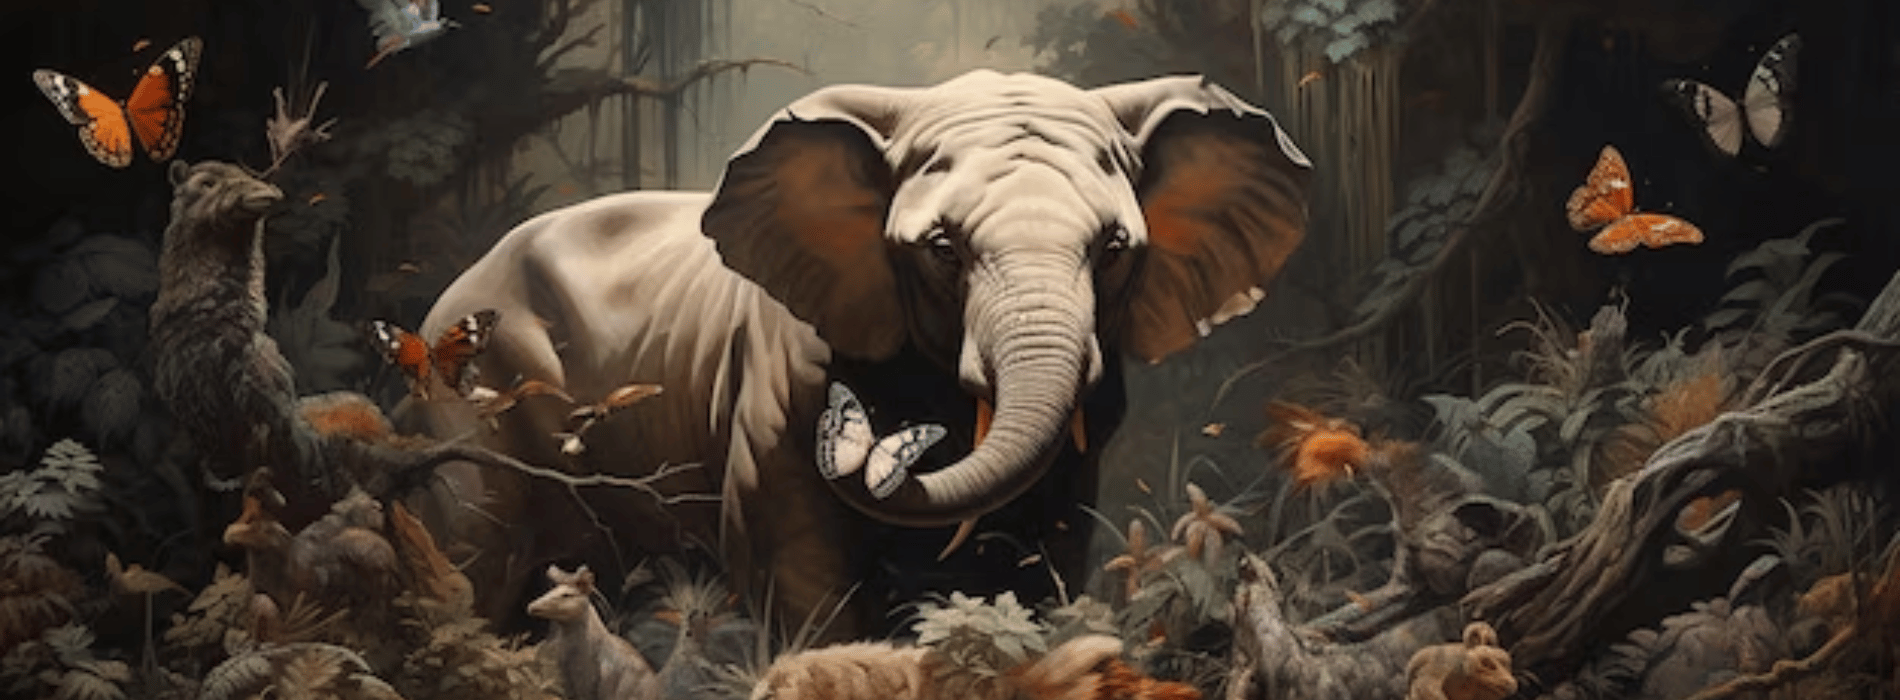 Soñar con elefante significado